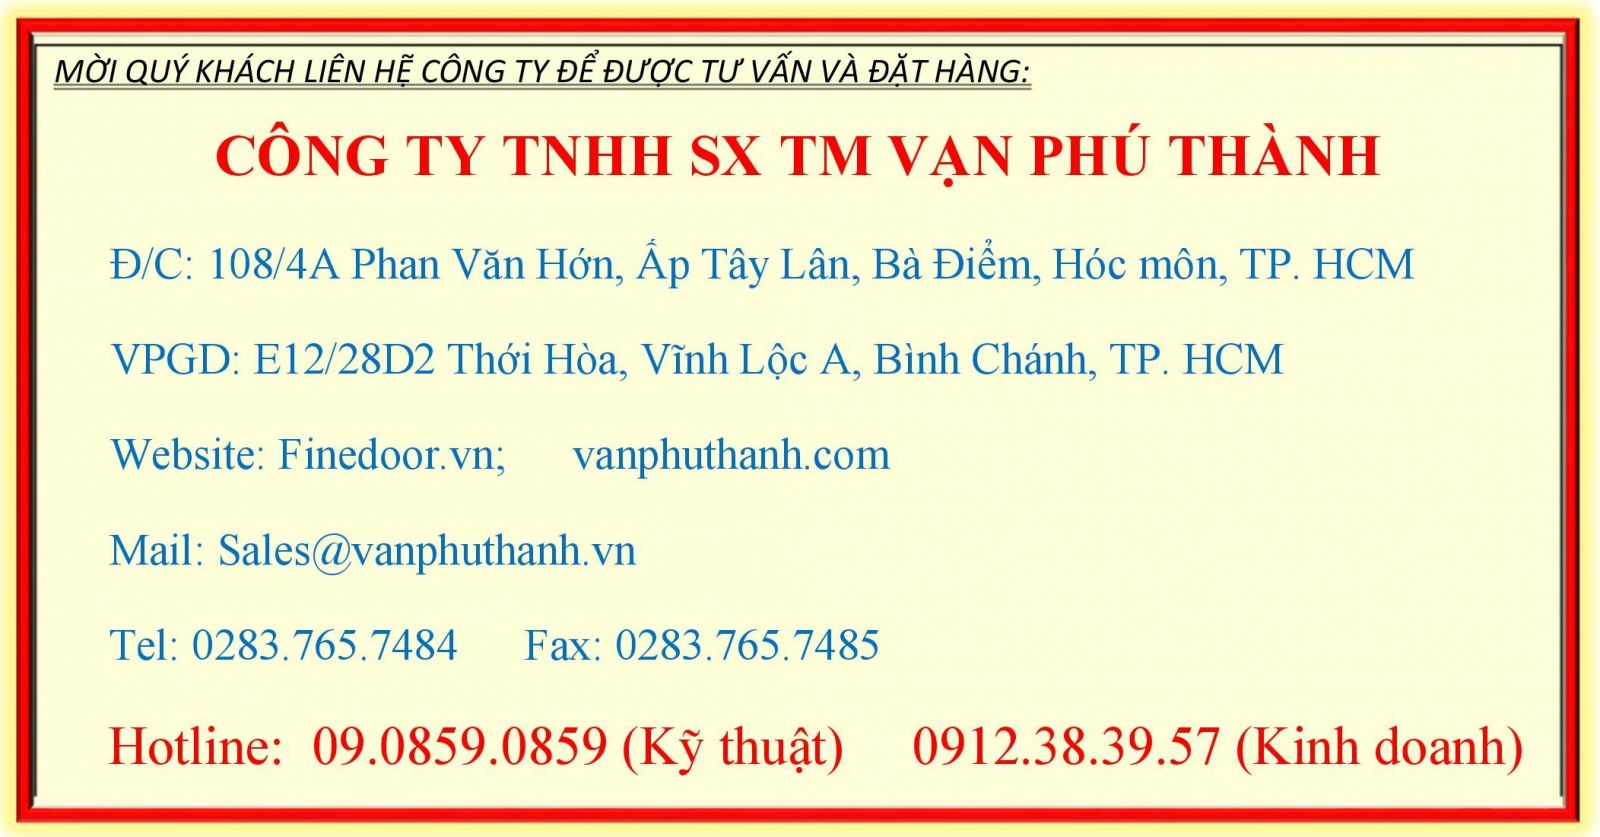 Thon g tin Cong ty Van Phu Thanh